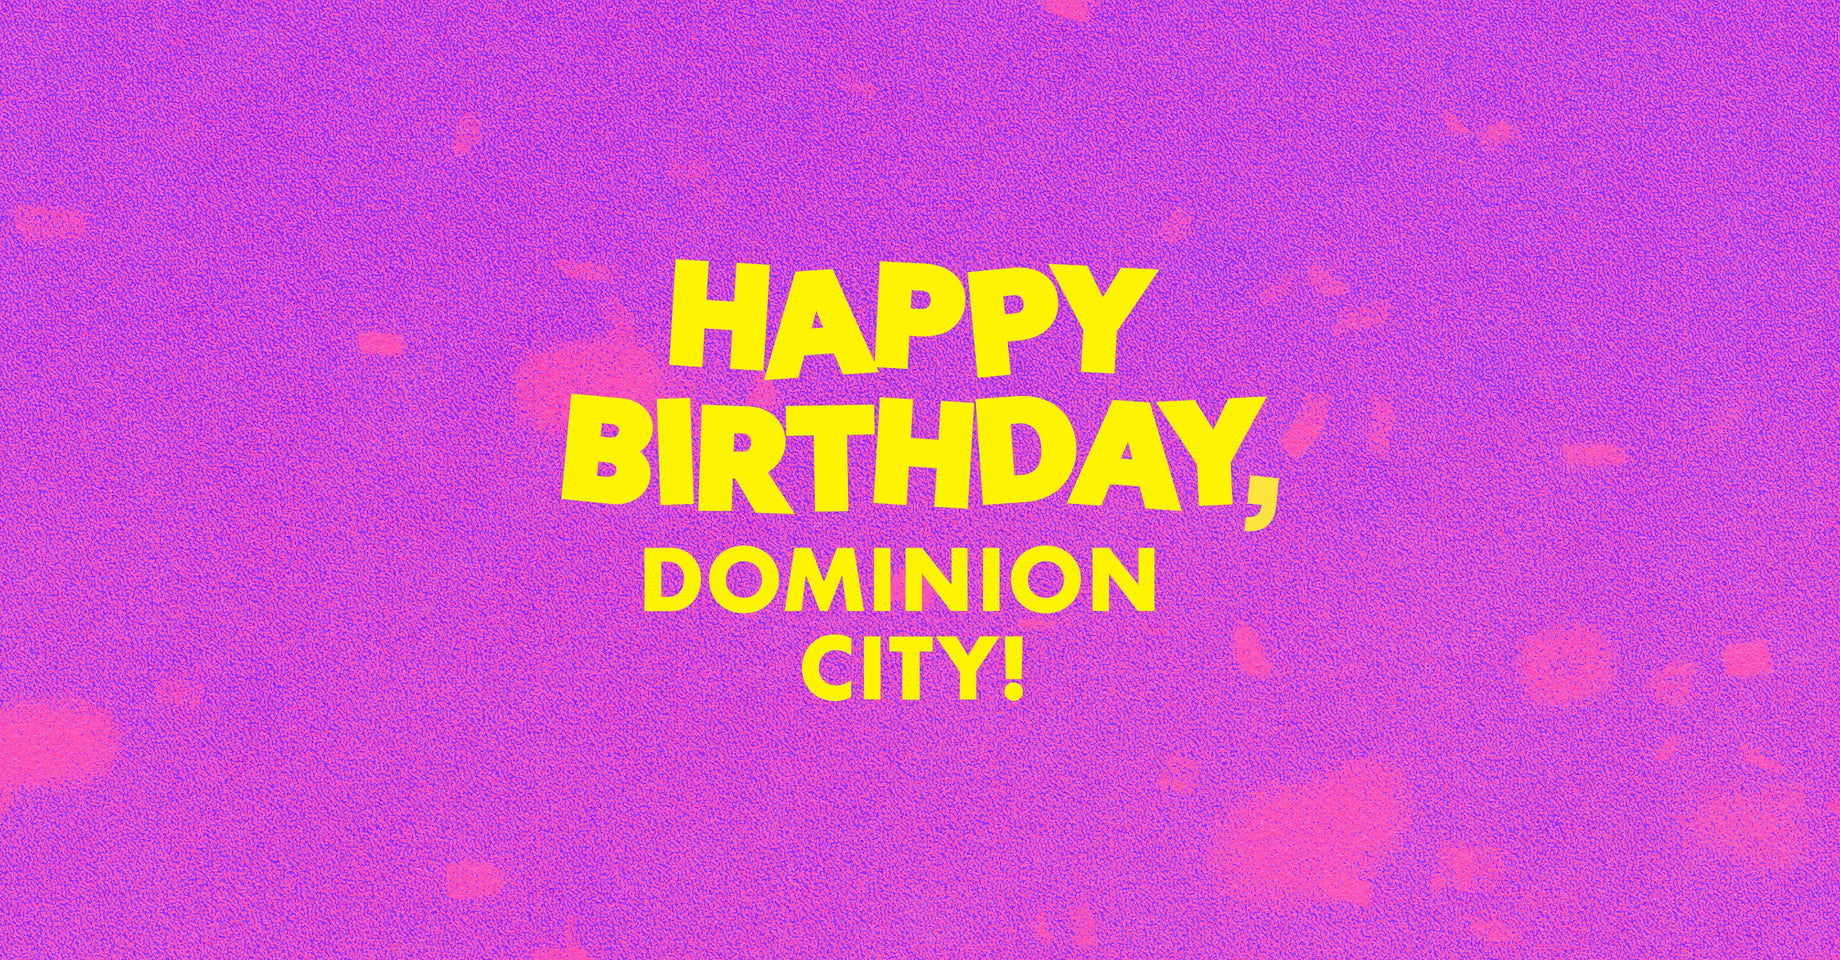 Happy Birthday, Dominion City!